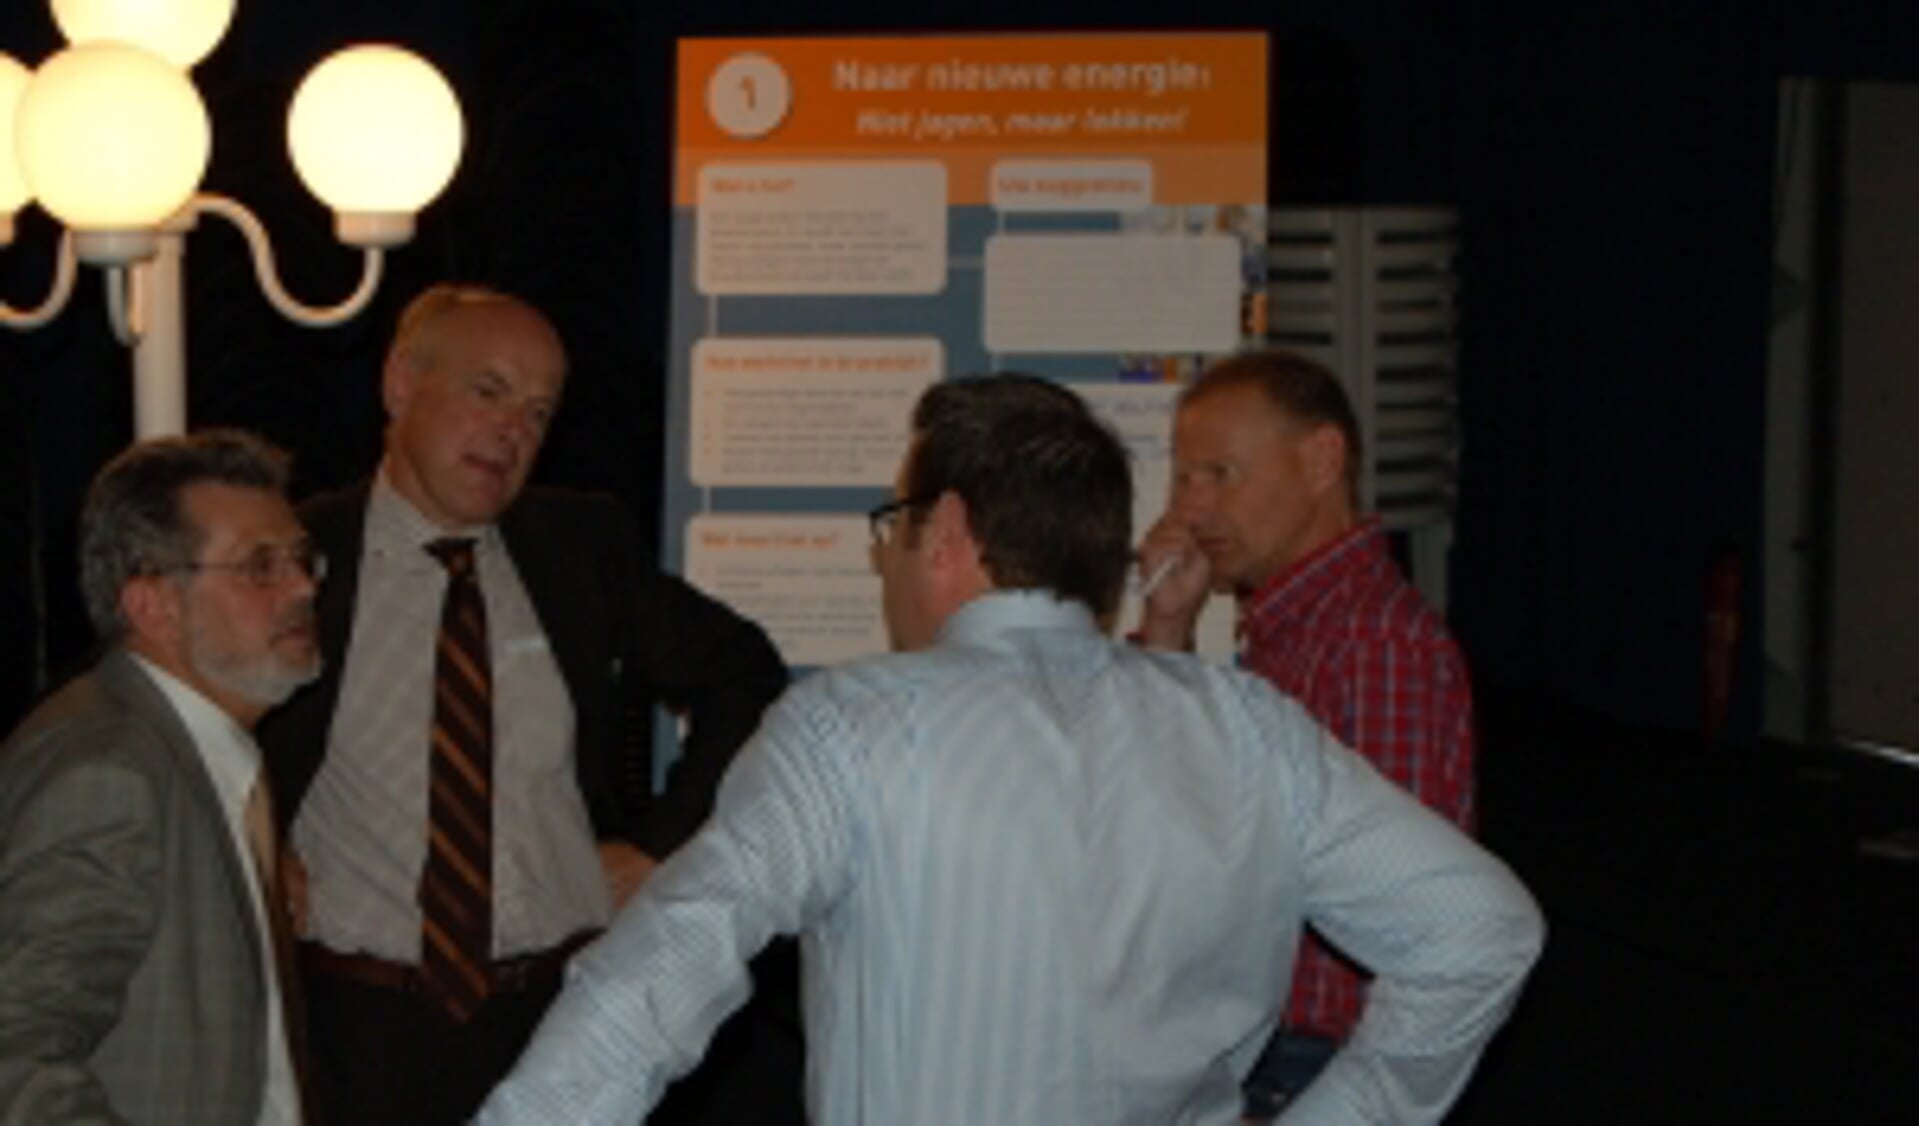  Discussie over mogelijkheden voor minder of goedkoper energiegebruik op de kottervloot. Tweede van links projectleider Henk Riphagen.